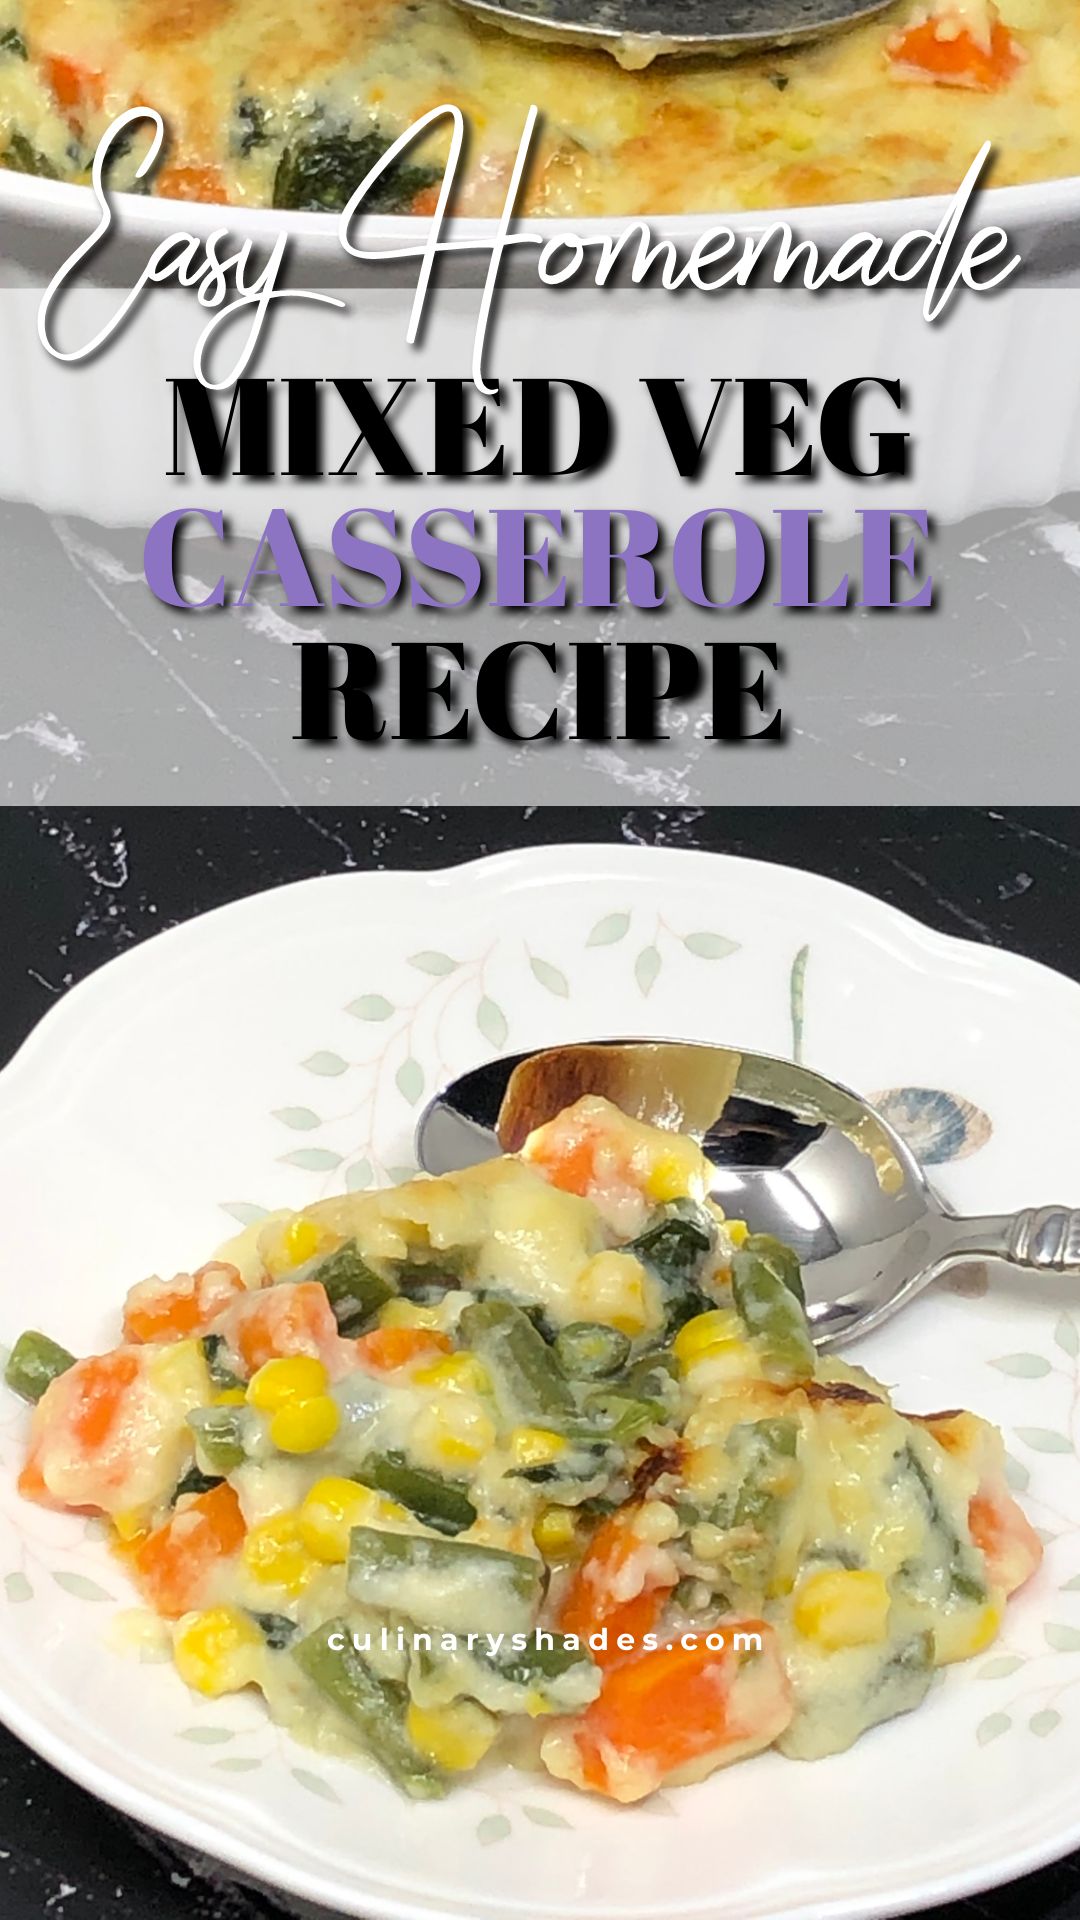 Mixed veg casserole pin